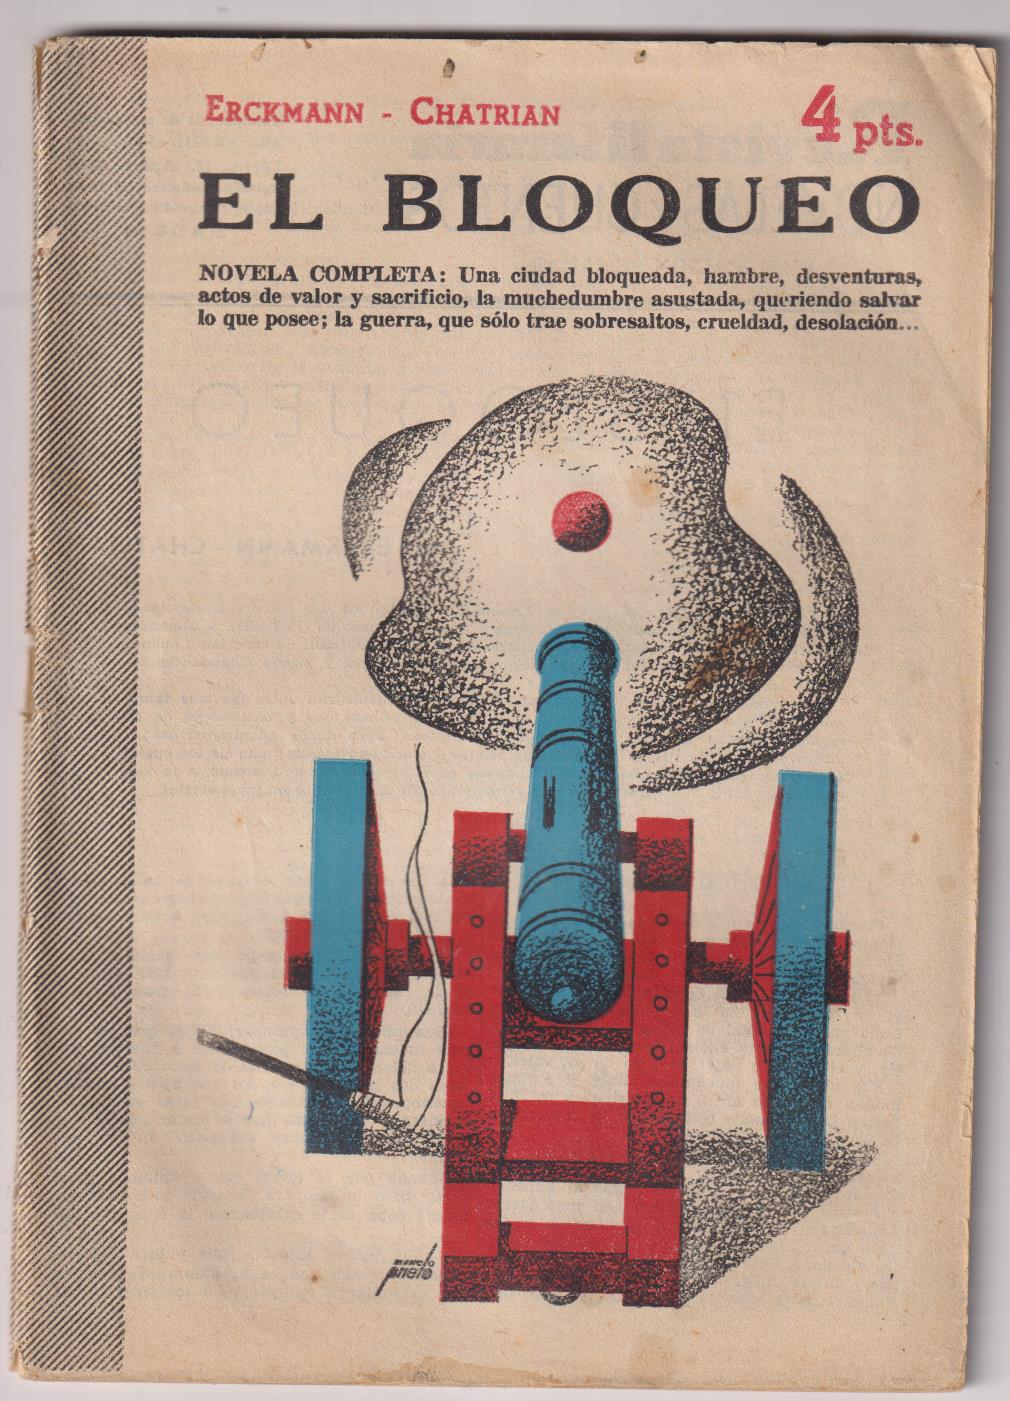 Revista Literaria Novelas y Cuentos. El Bloqueo por Erckmann-Chatrian, Año 1953